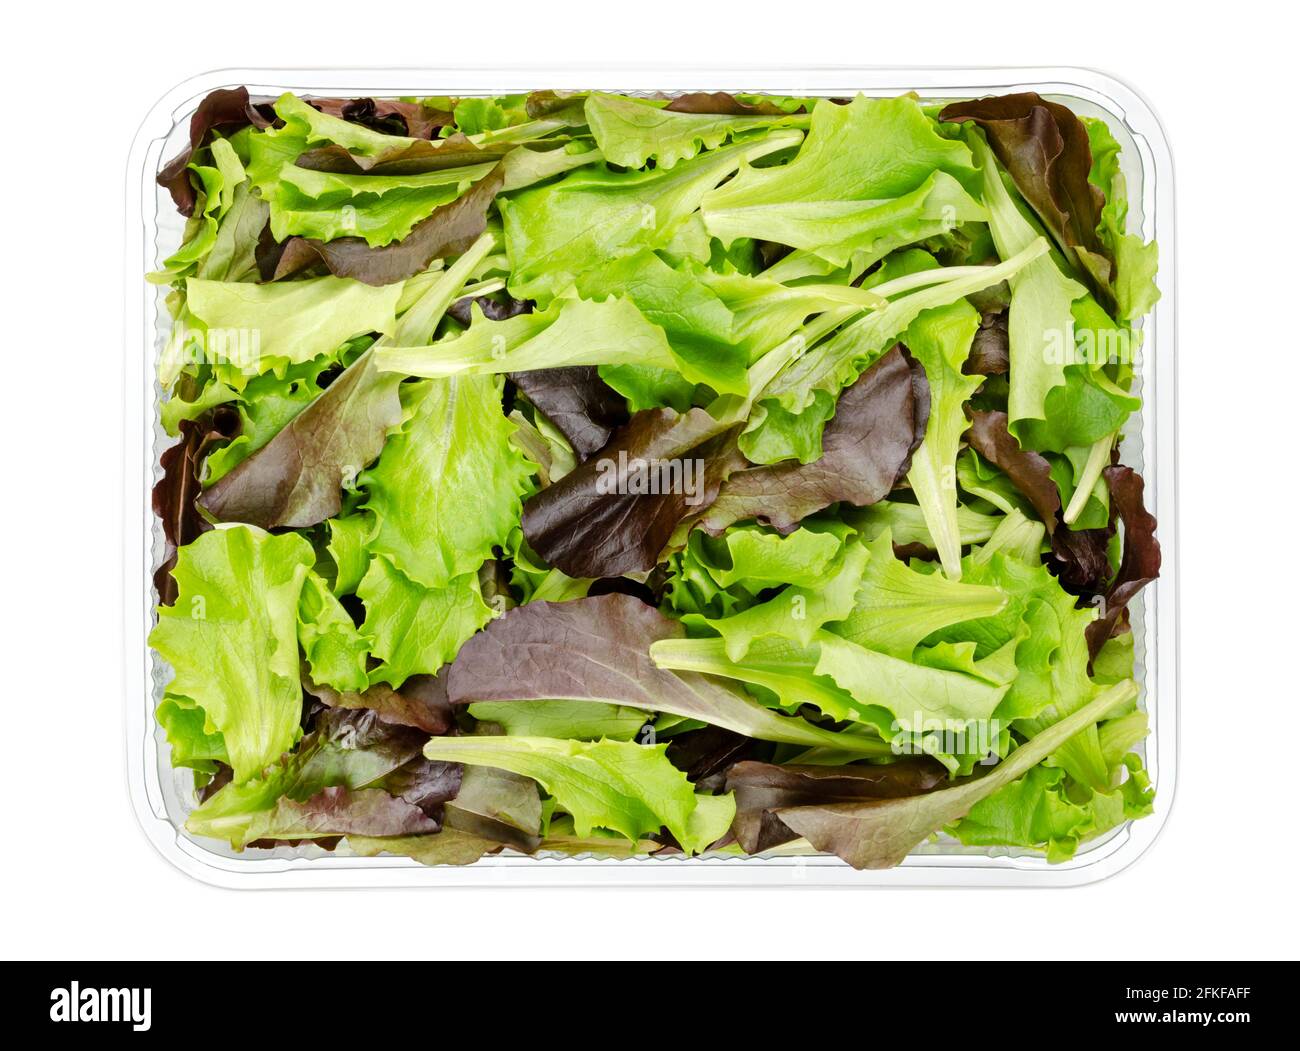 Frisch gepflückter loser Blattsalat, rot-grün-blättriger Pflucksalat, in einem Plastikbehälter, von oben. Salat, der für Salate verwendet wird. Stockfoto